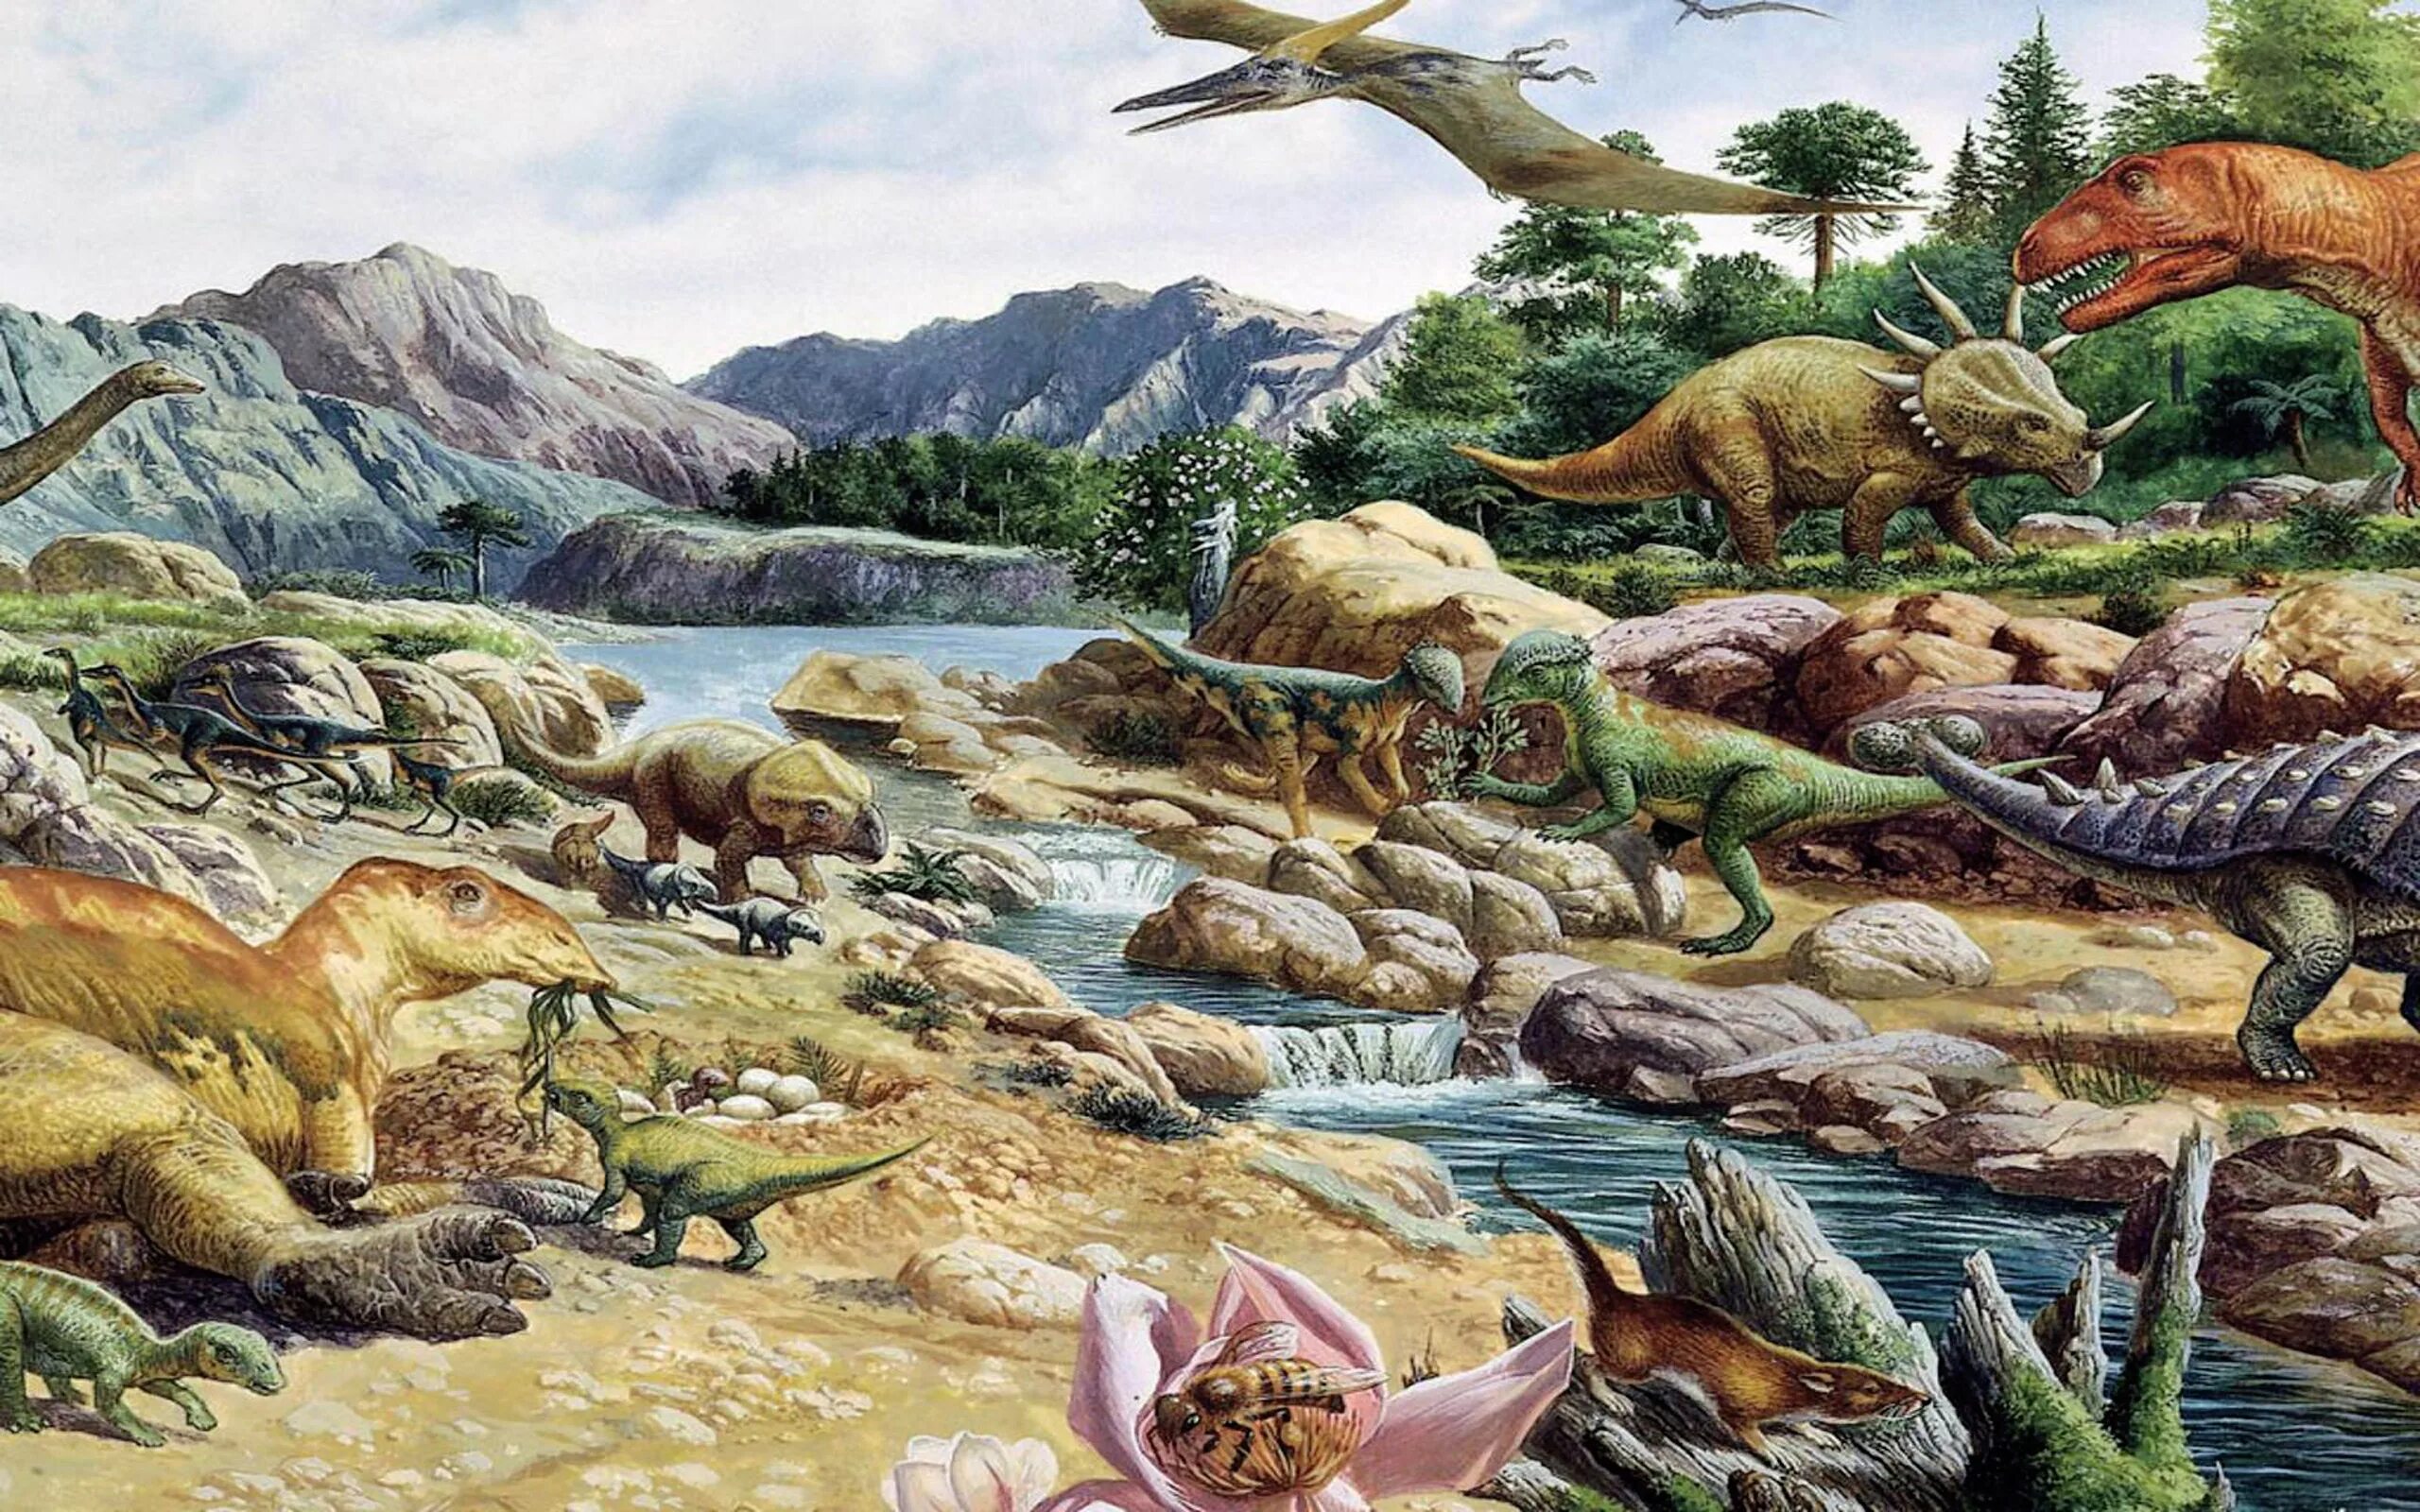 Юрский период мезозойской эры. Меловой период мезозойской эры. Меловой период мезозойской эры динозавры. Мезозойская Эра Юрский период растения.